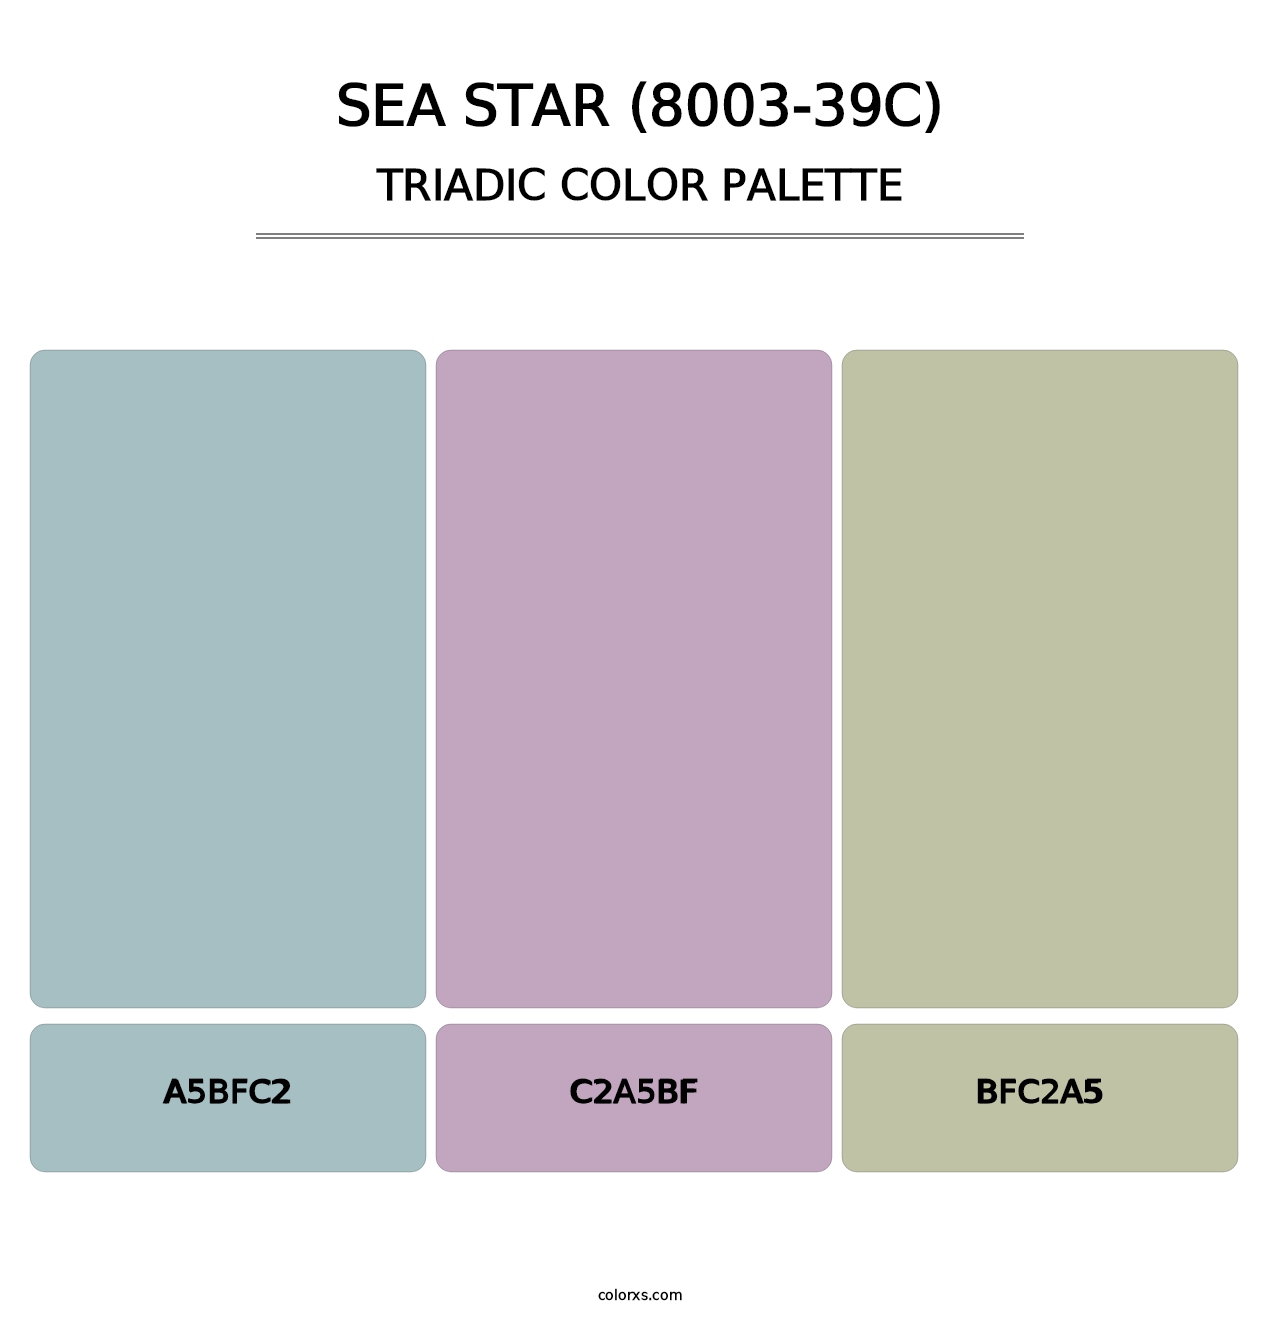 Sea Star (8003-39C) - Triadic Color Palette